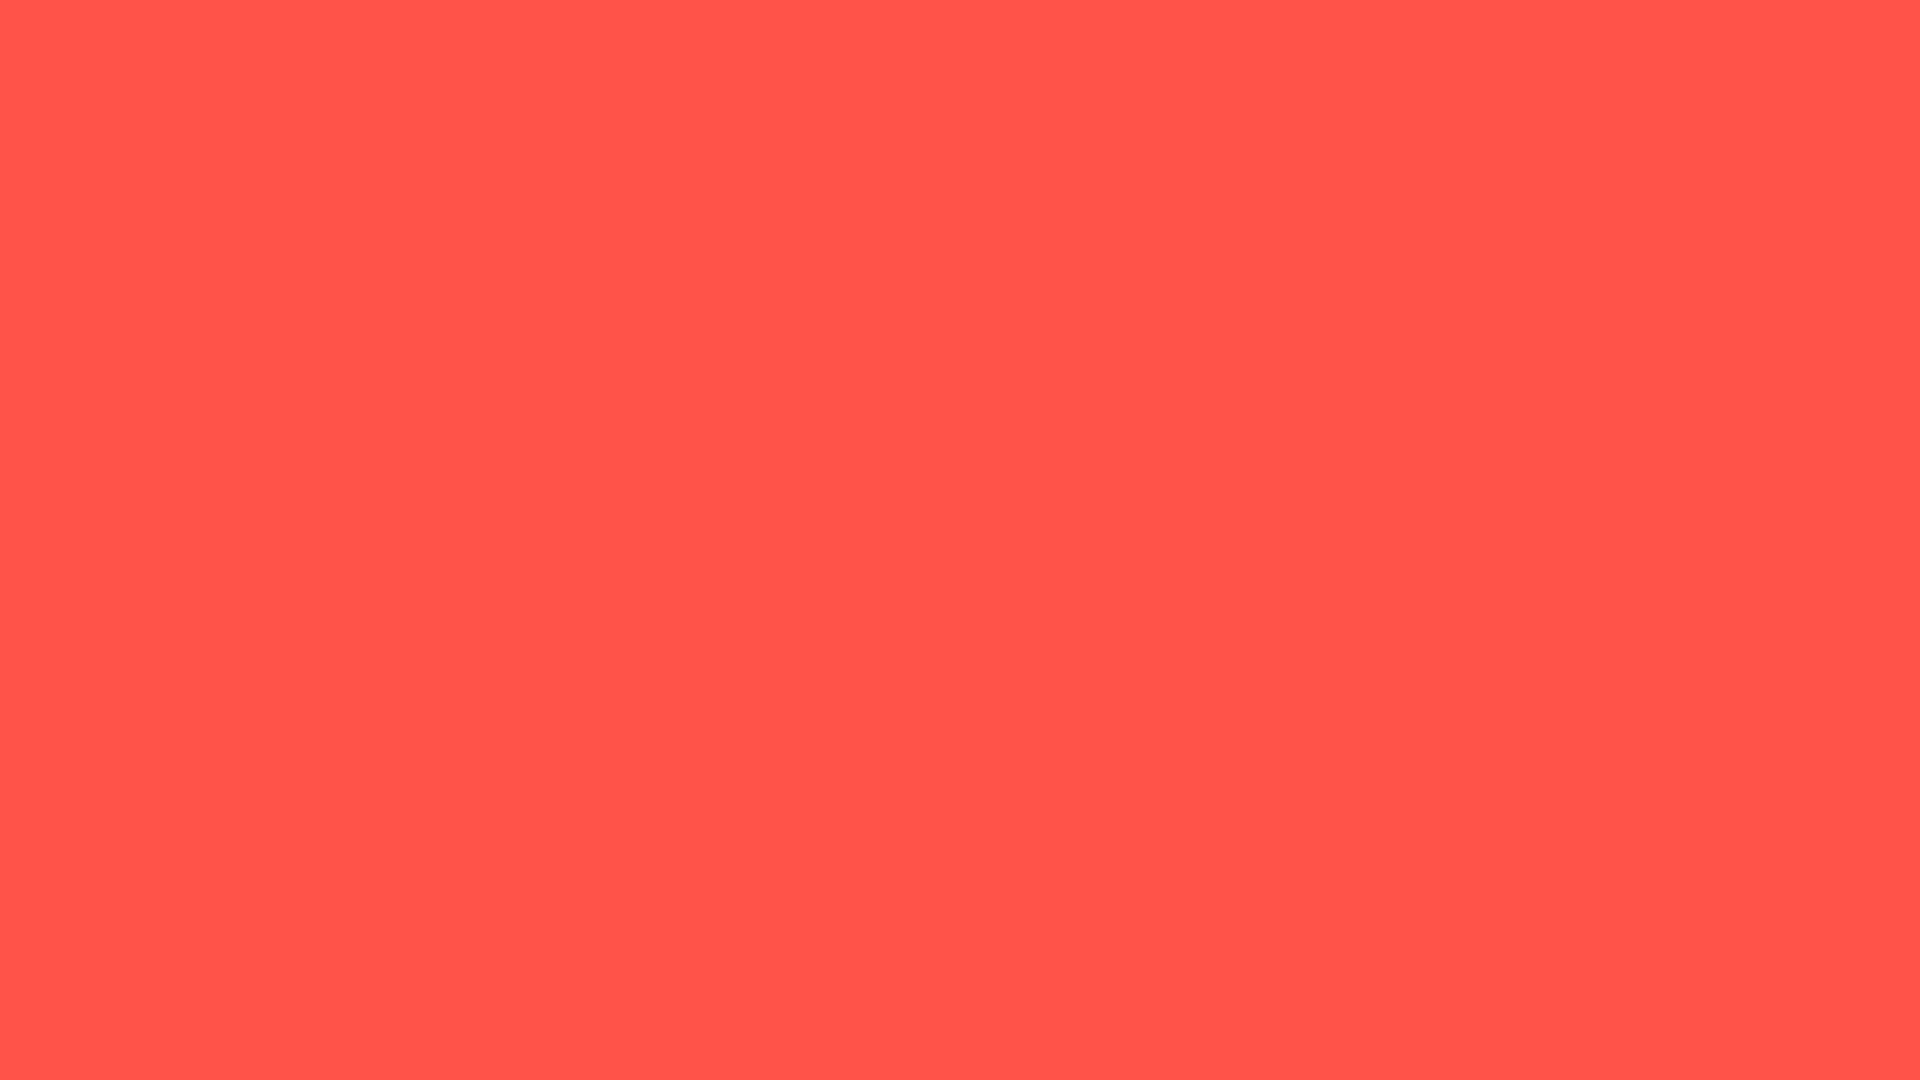 Nền màu đỏ cam đậm là sự kết hợp hoàn hảo giữa sự nổi bật và độc đáo. Với tông màu đỏ cam đậm, một không gian trang trí sẽ trở nên ấm áp và tươi sáng. Hãy đón nhận sự khác biệt của sắc đỏ cam và biến màn hình của bạn thành một thịnh vượng bất tận.